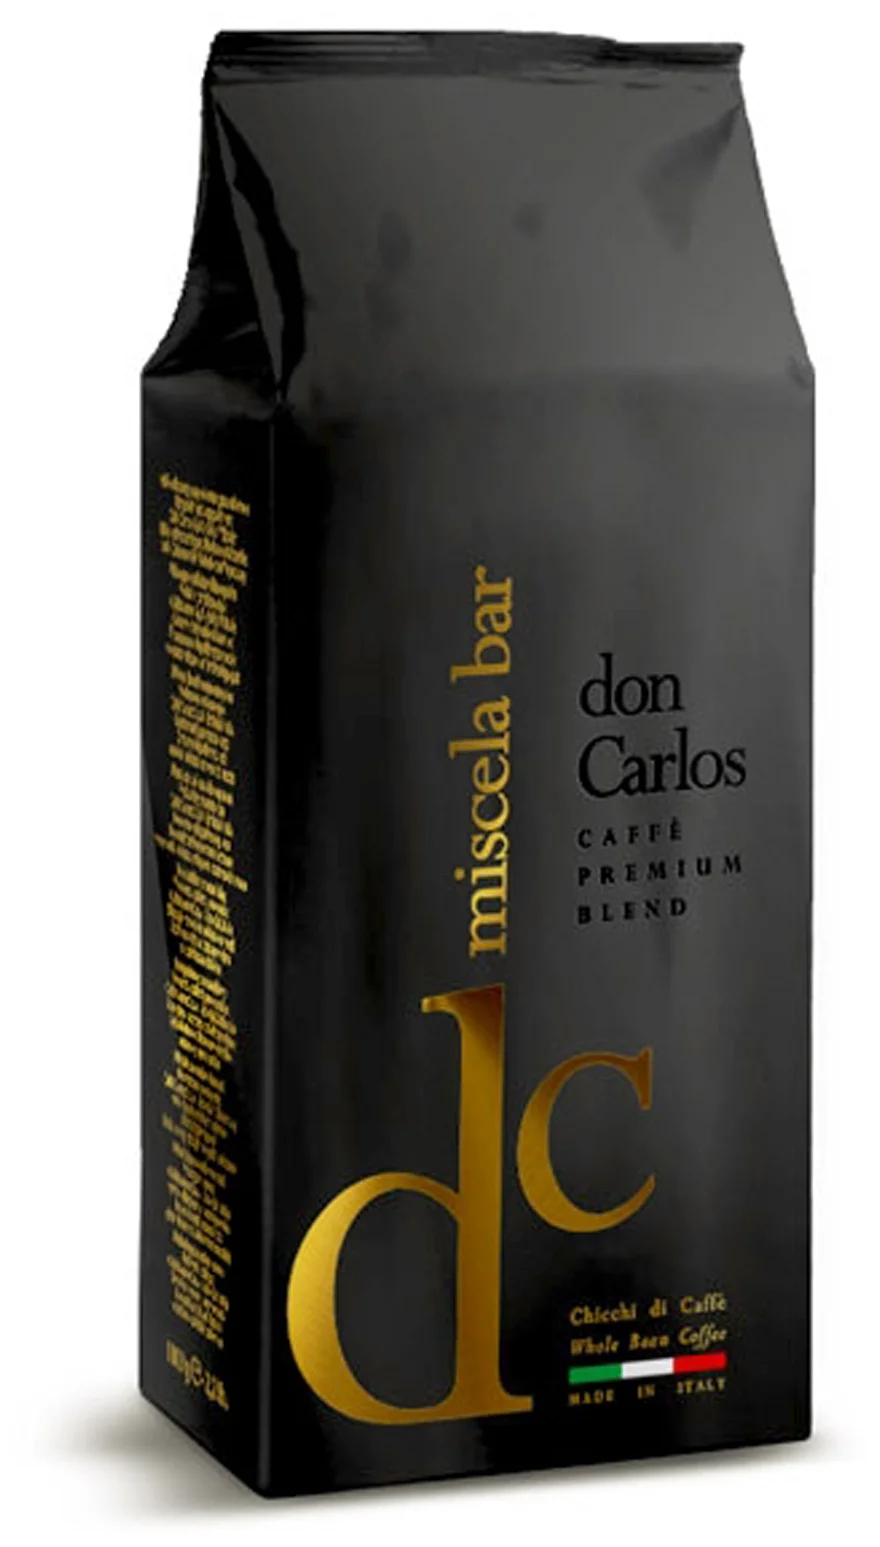 Carraro "Don Carlos" - вид зерен: смесь арабики и робусты